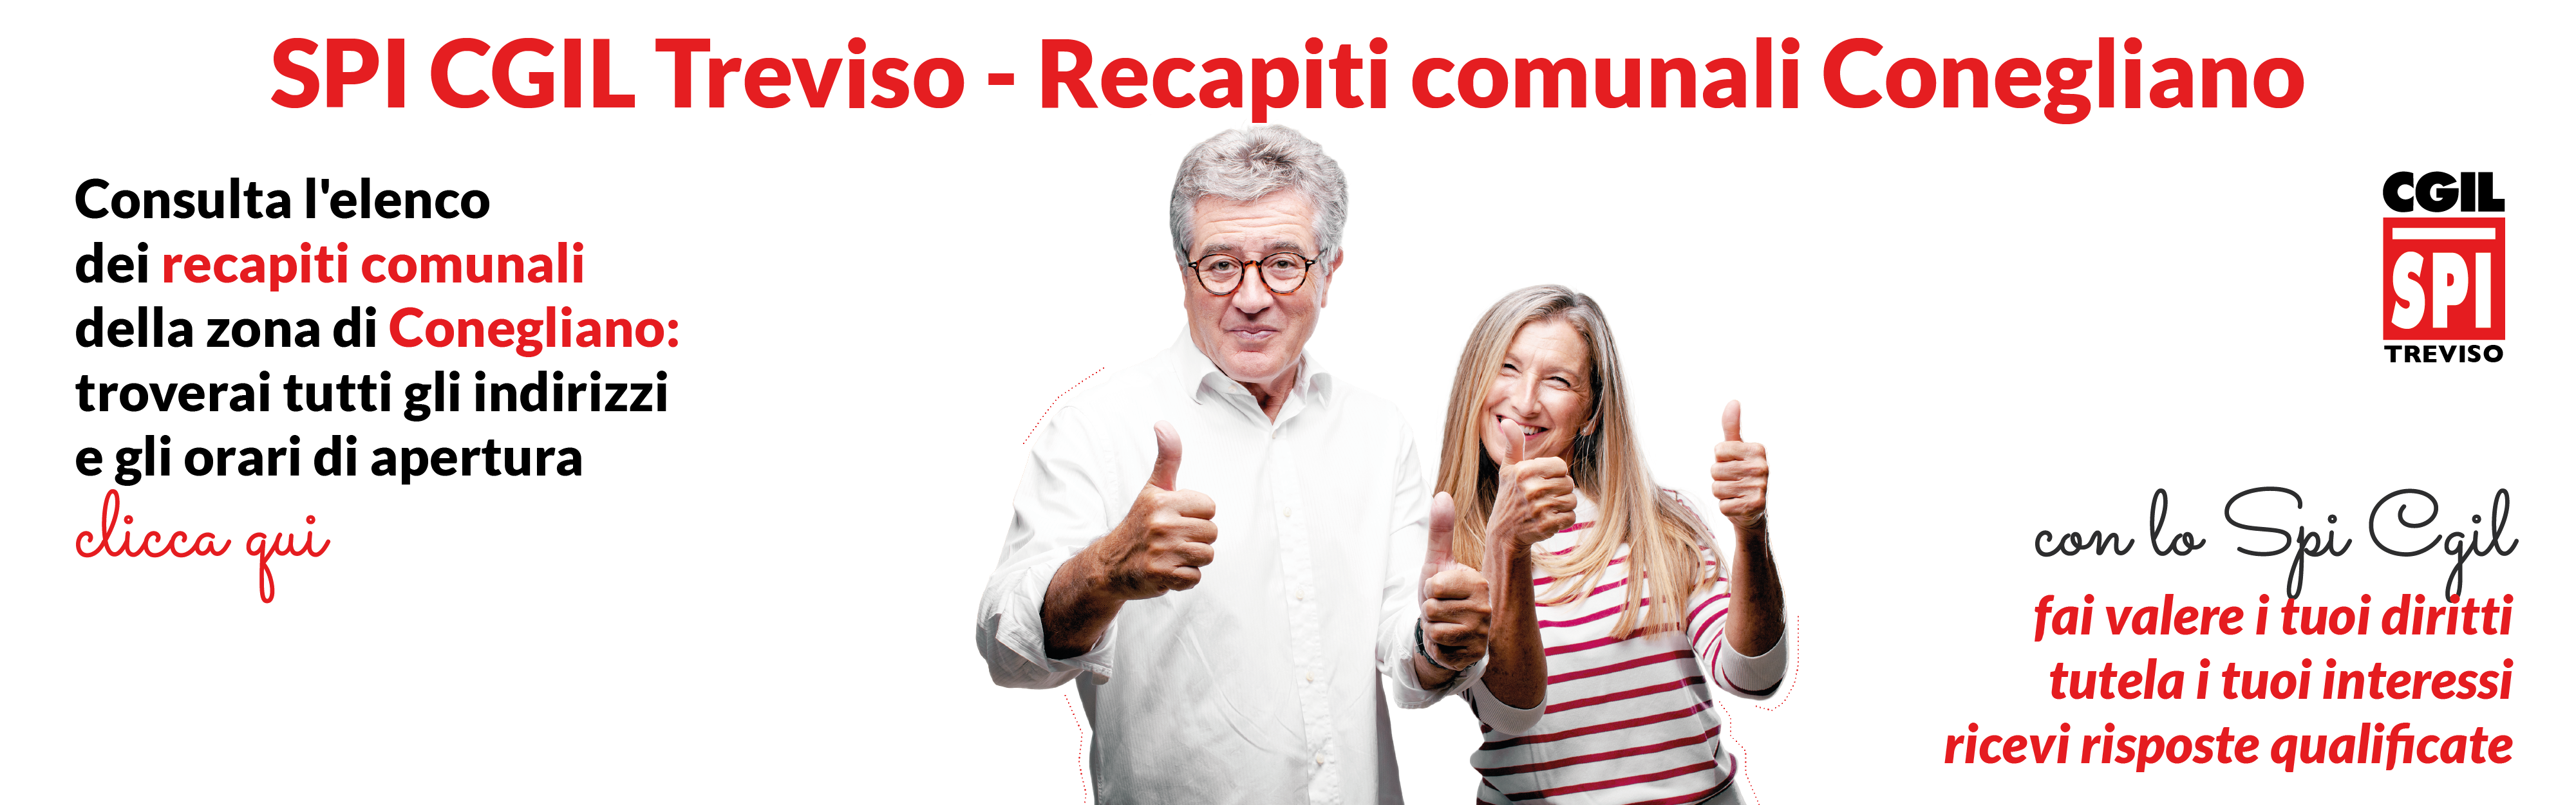 SPI CGIL TV-Recapiti Conegliano-banner